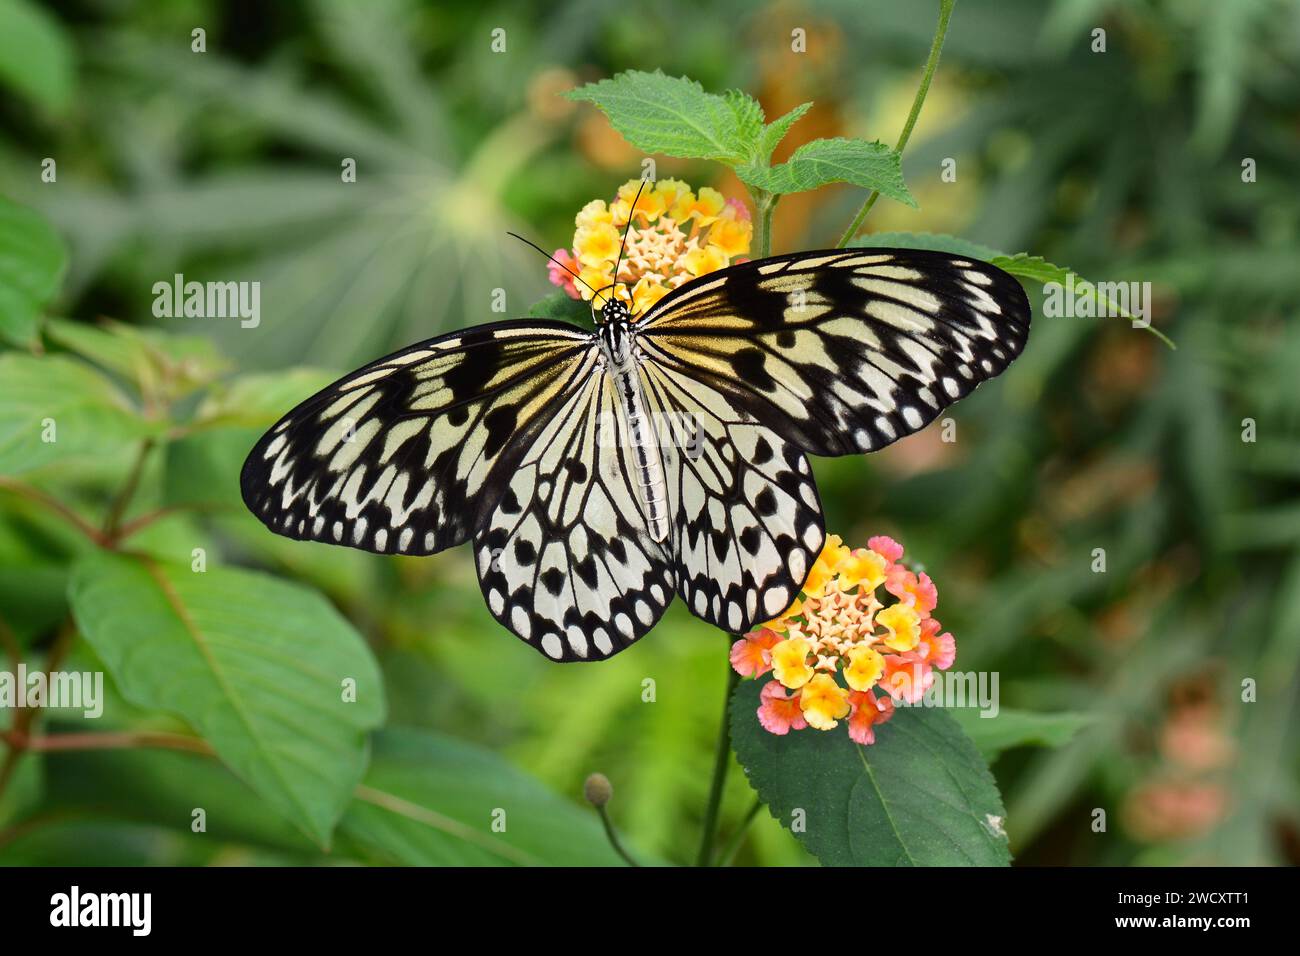 Grand arbre Nymphe papillon atterrit sur une fleur pour le nectar dans les jardins. Banque D'Images